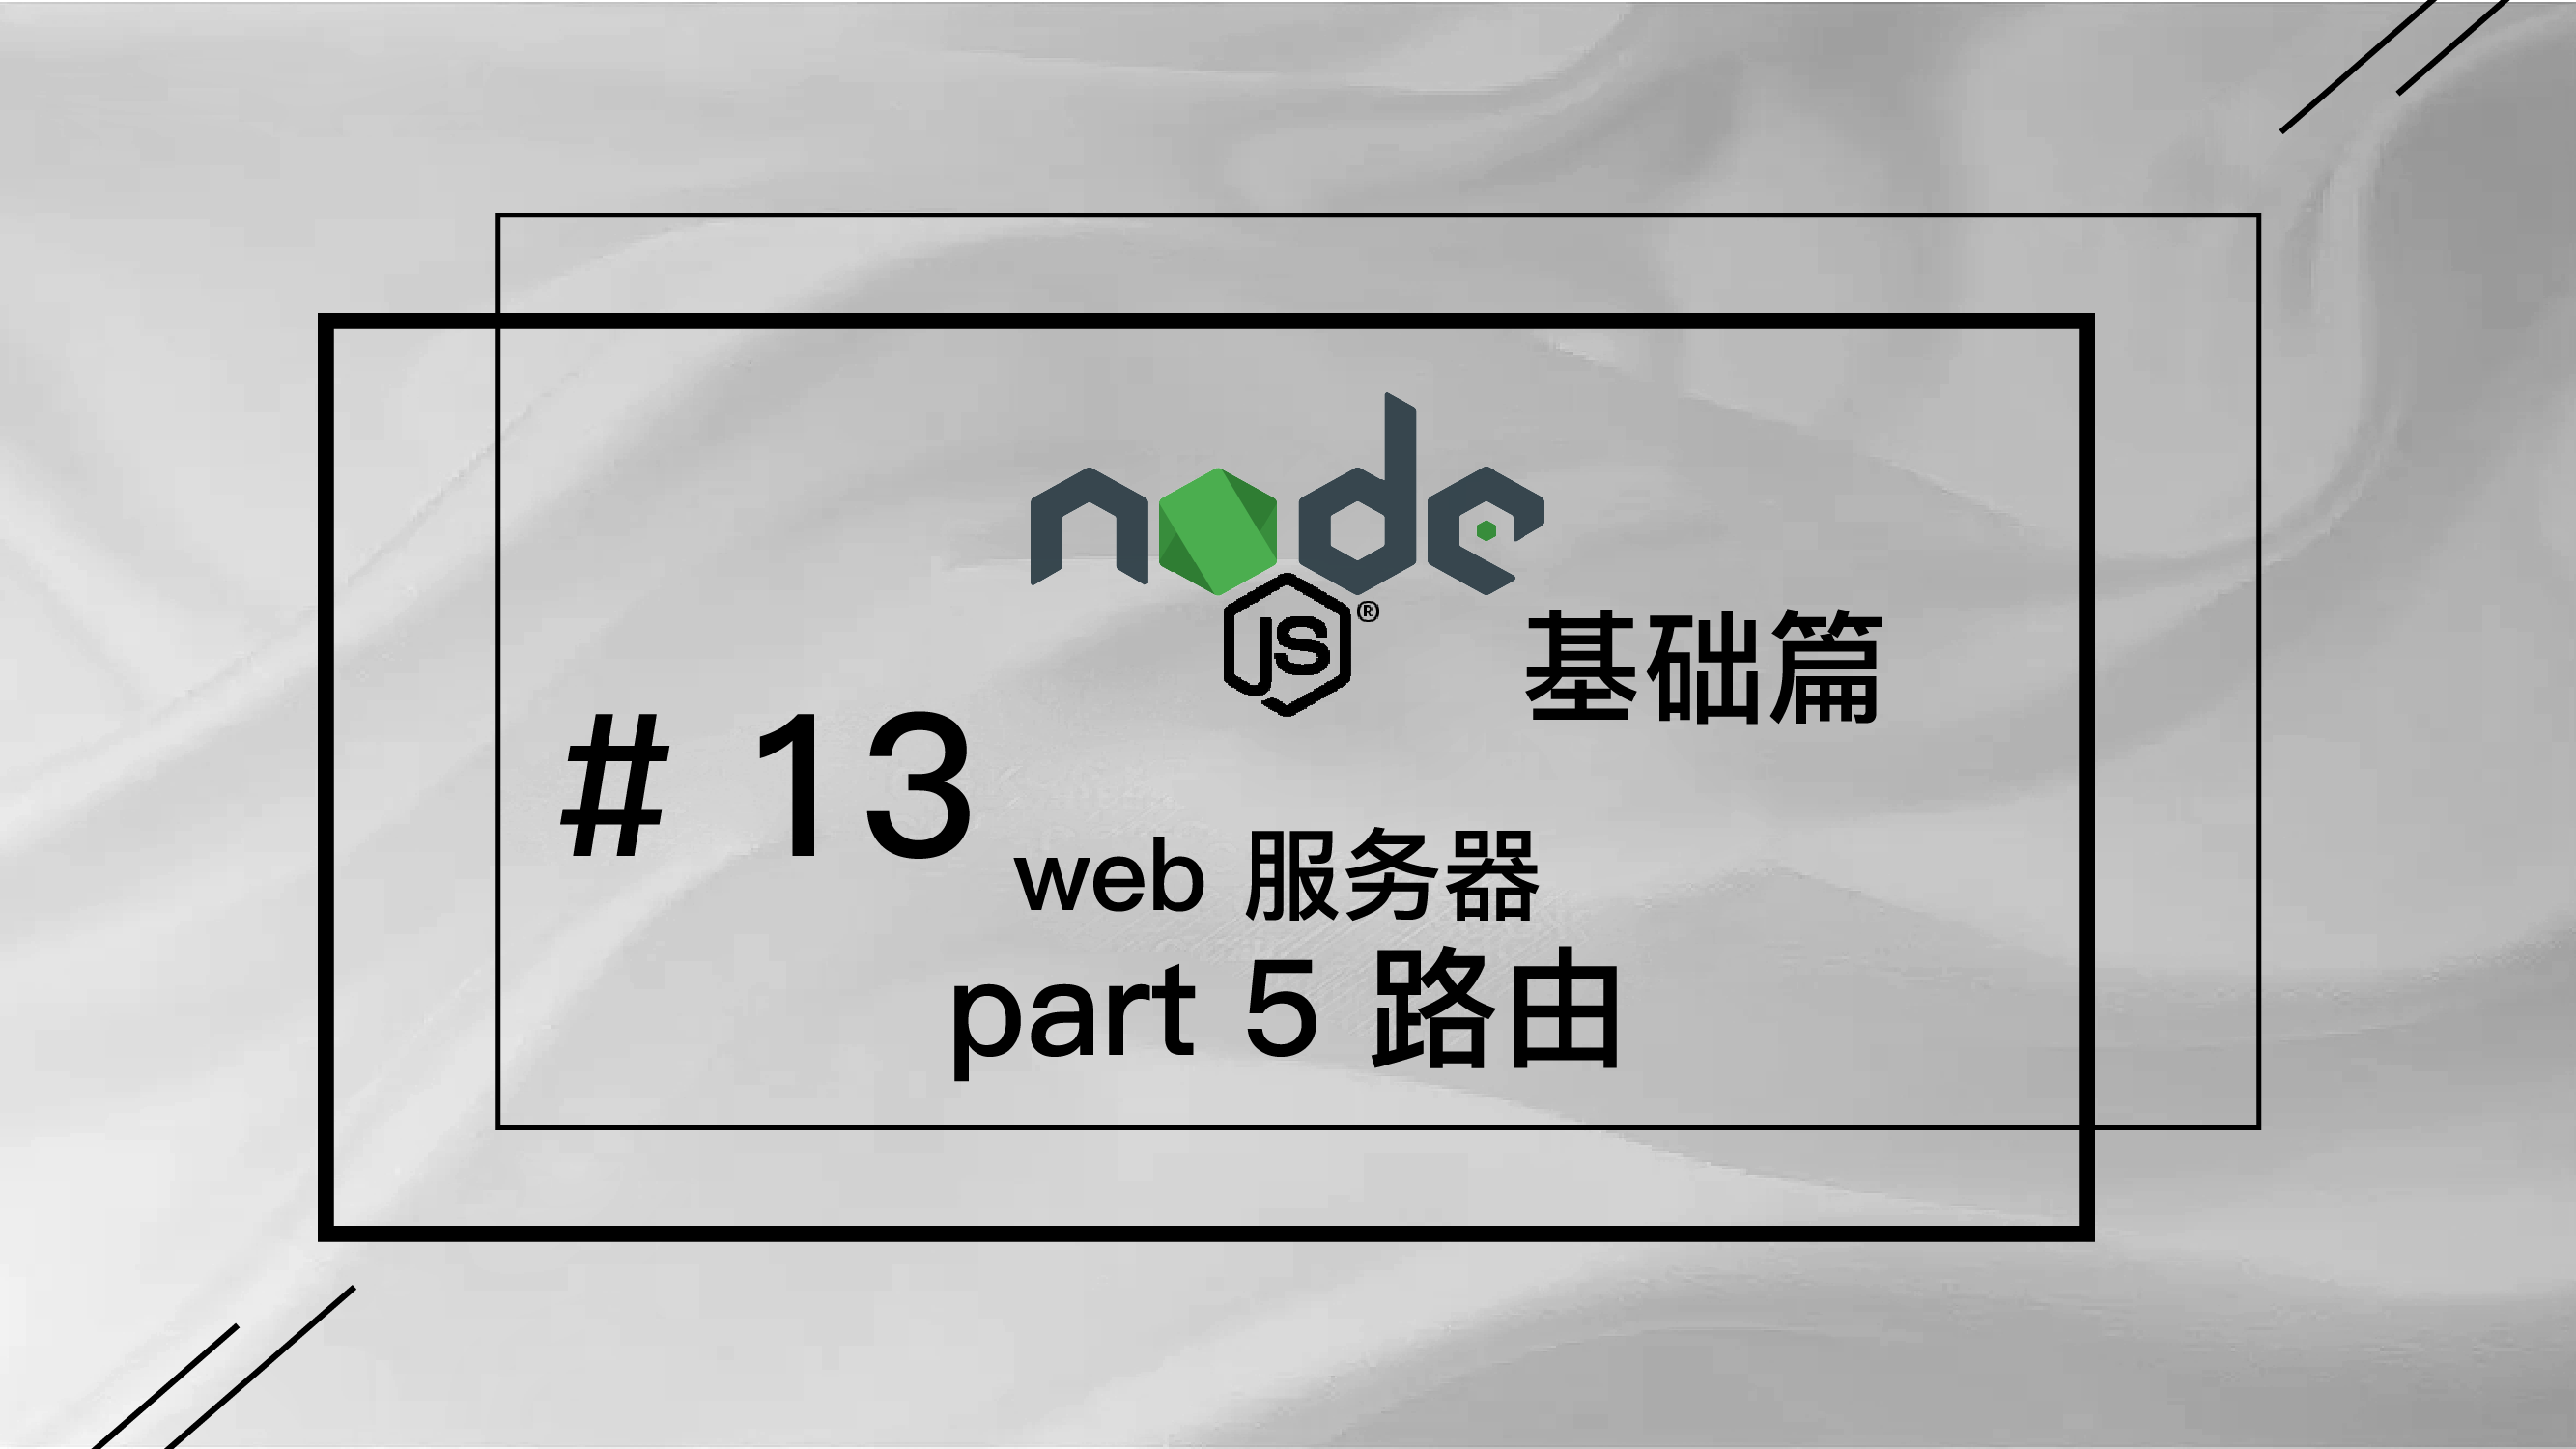 轻松学 Node.js - 基础篇免费视频教程 #13 web 服务器 part 5 路由